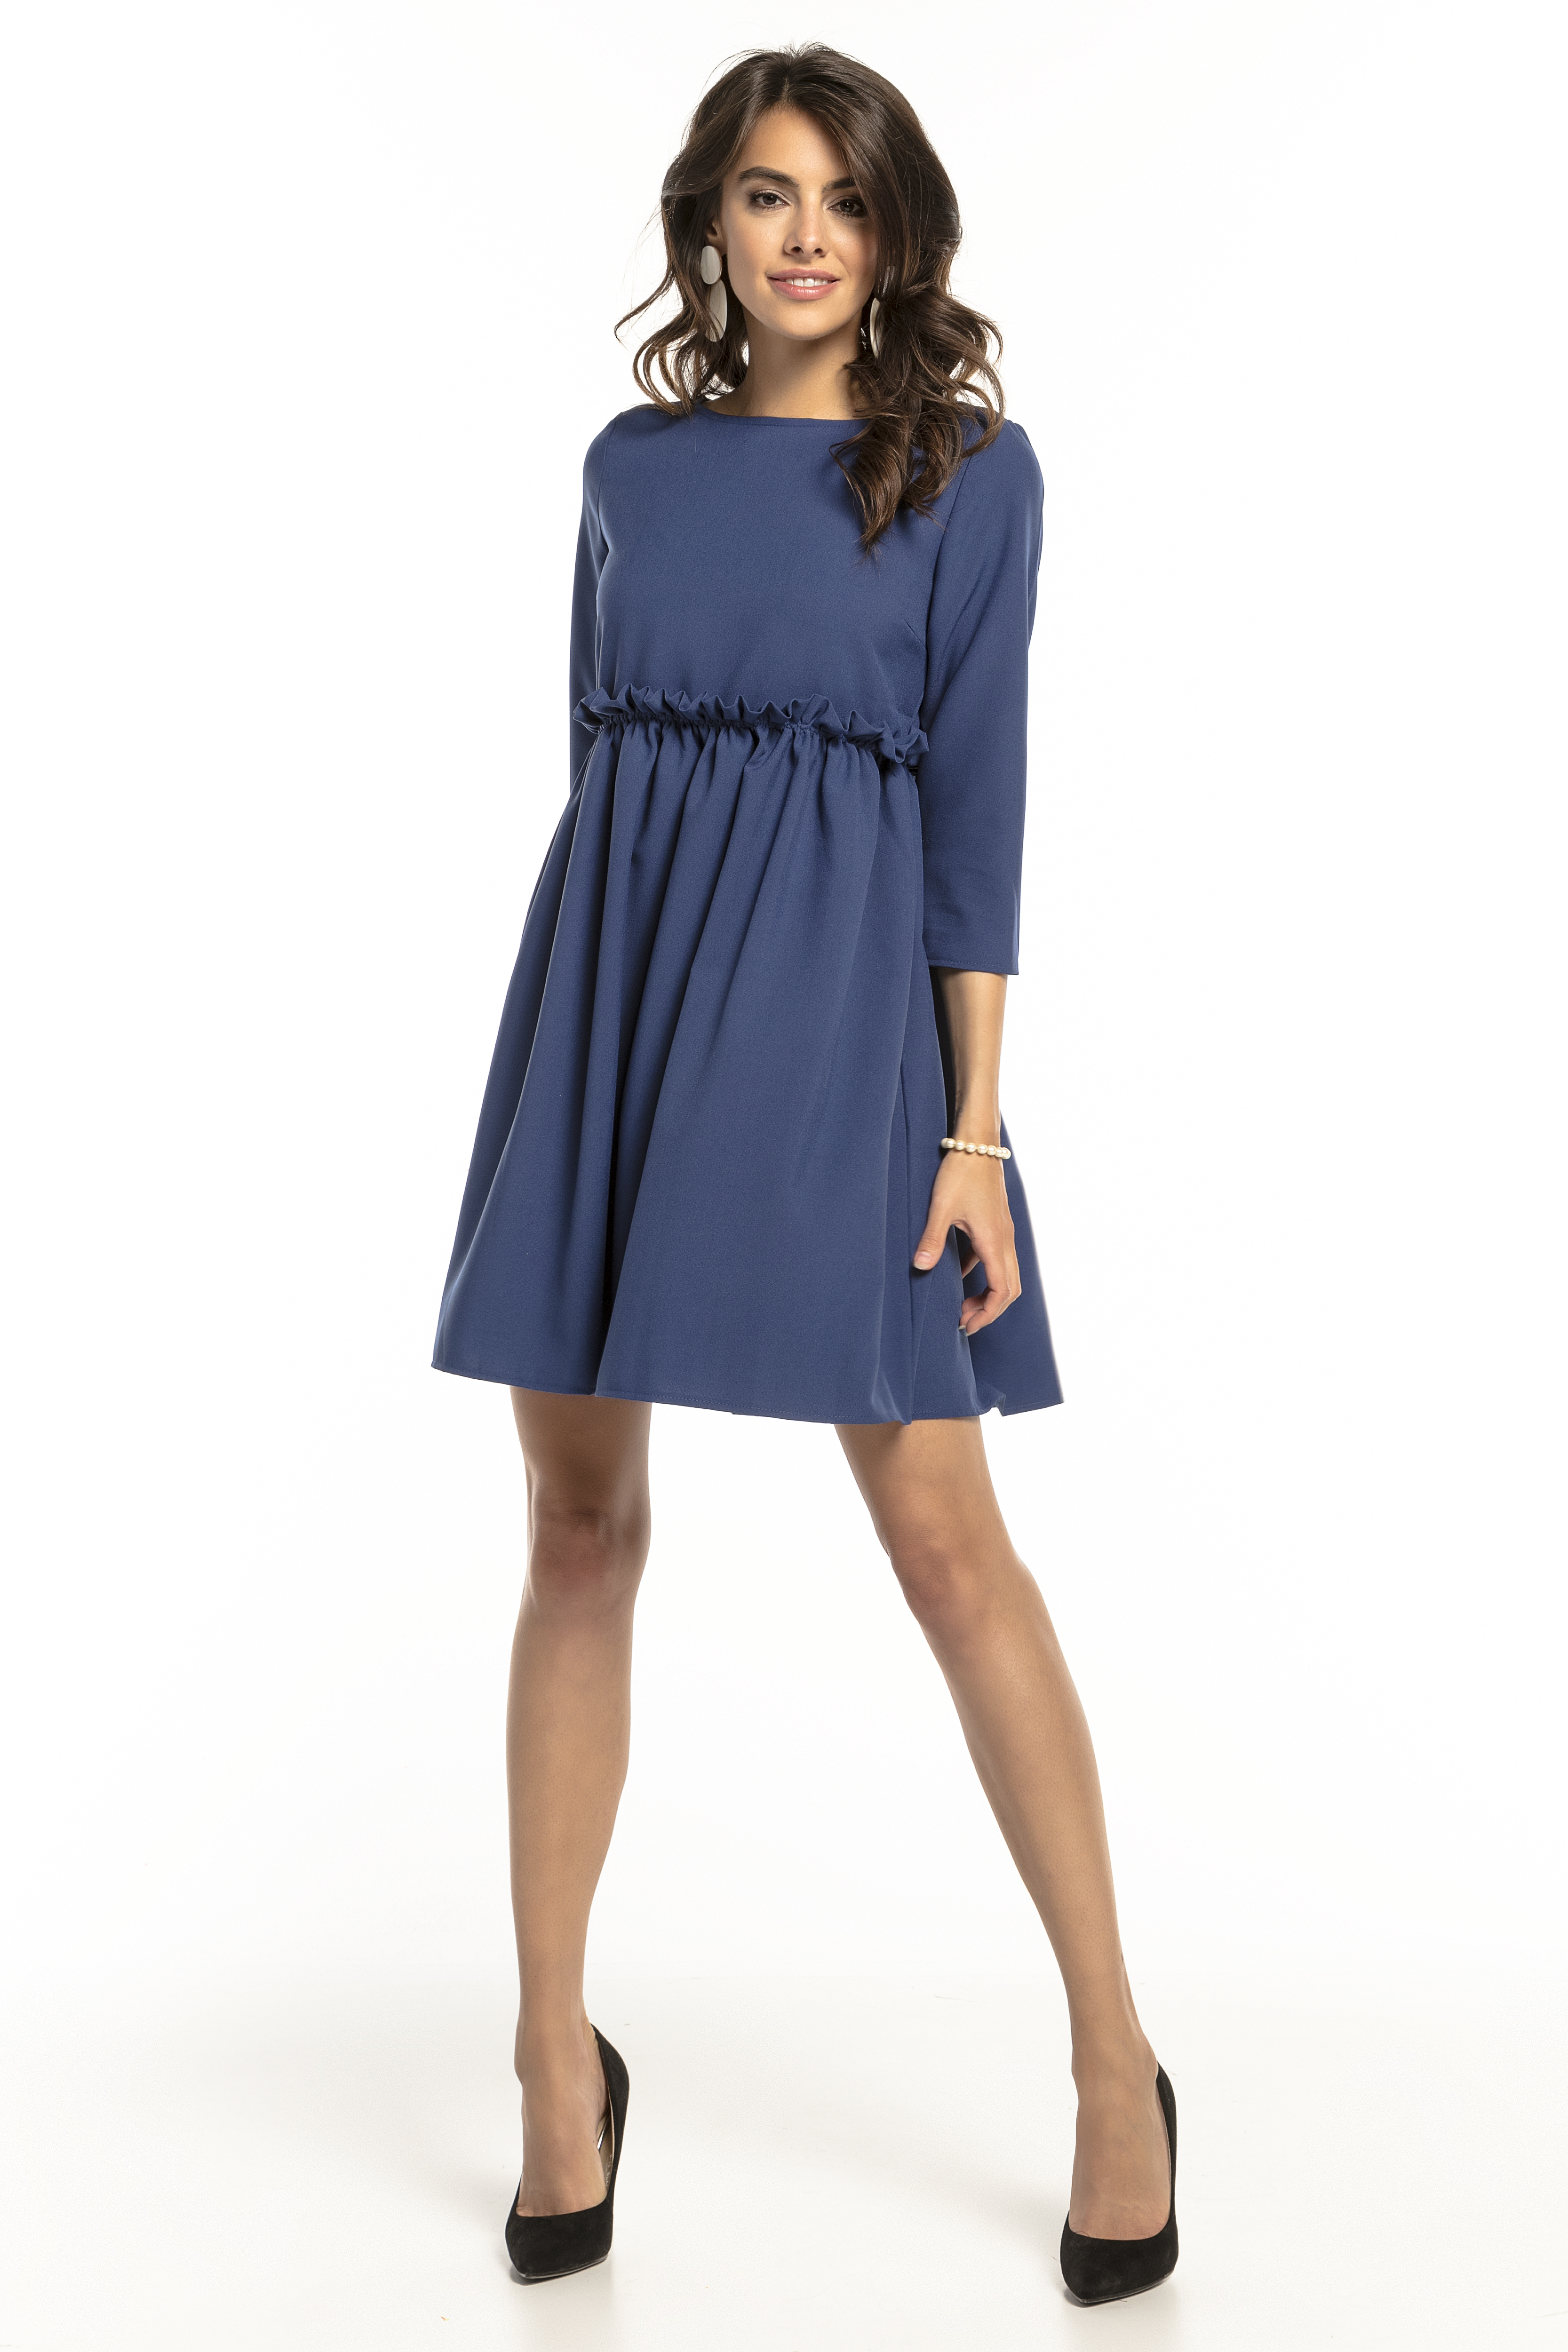 Tessita Woman's Dress T284 4 Navy Blue